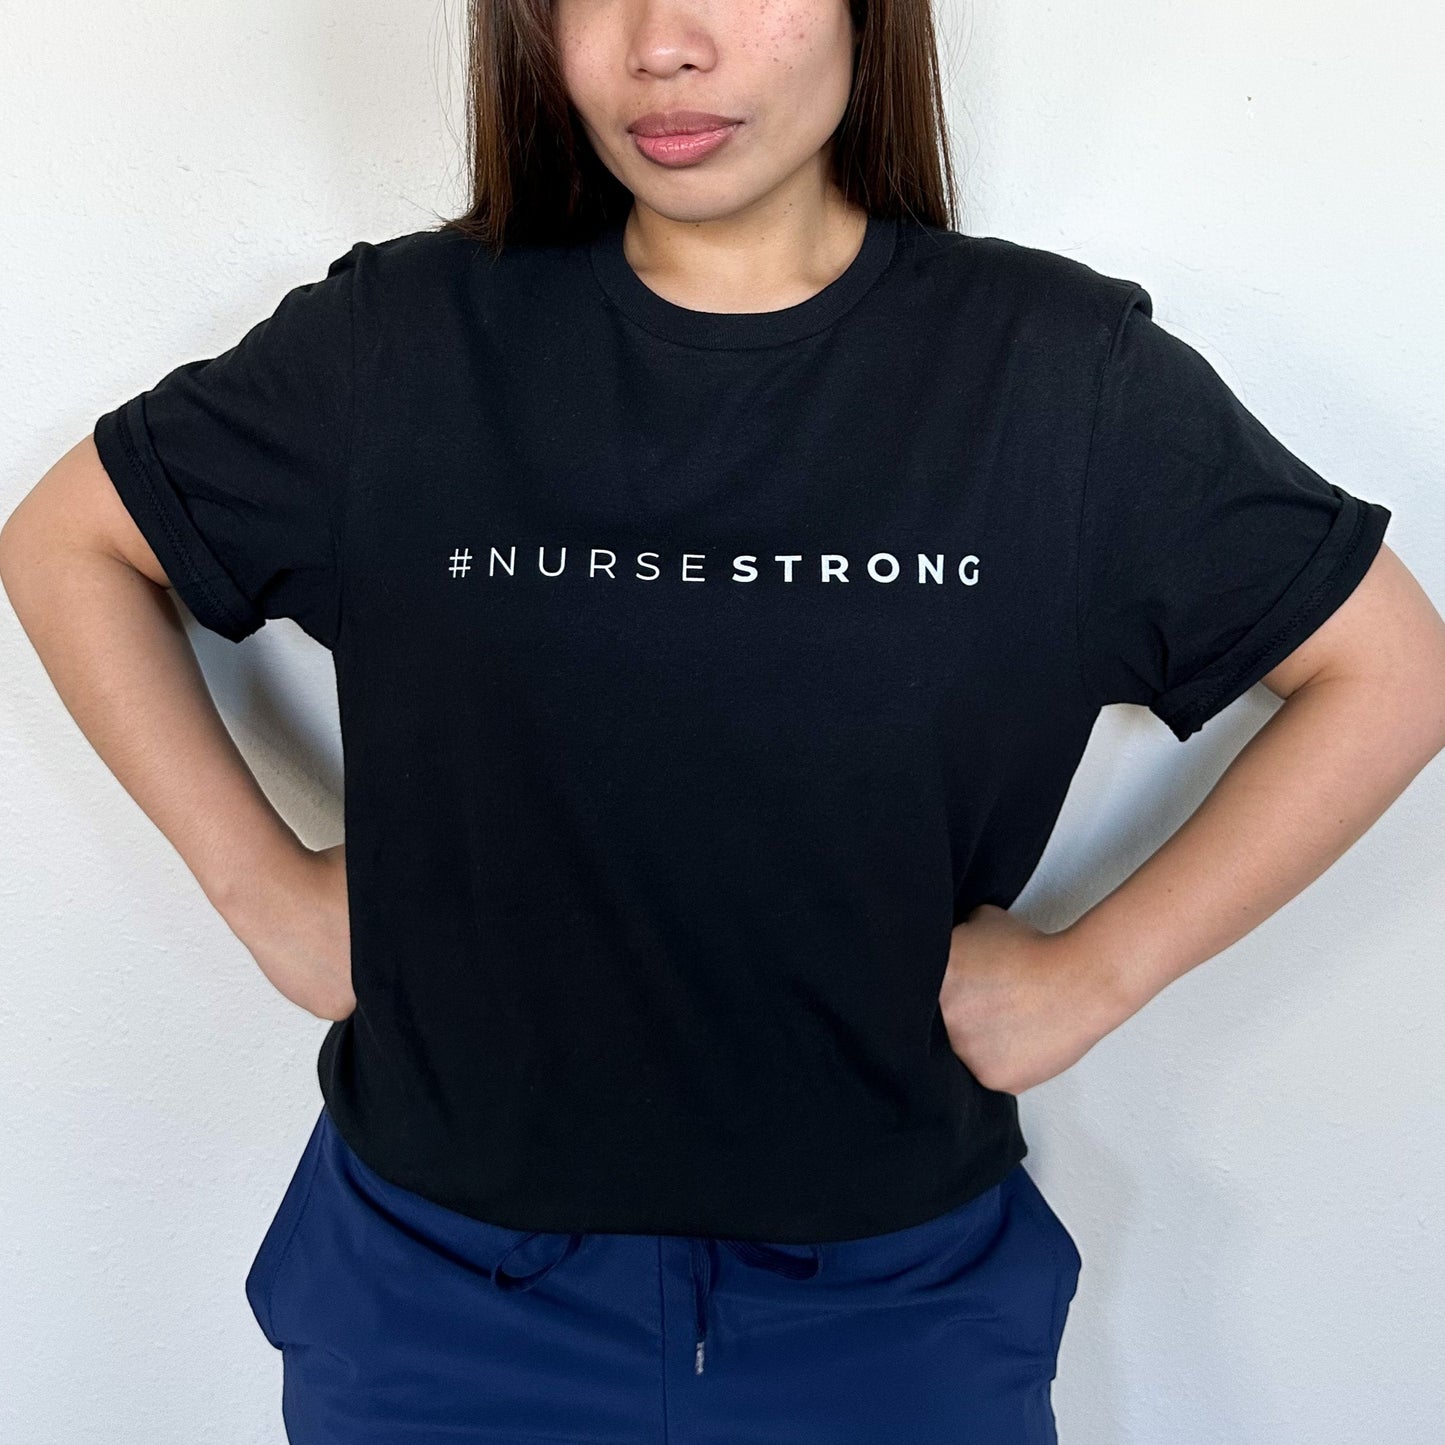 NurseStrong